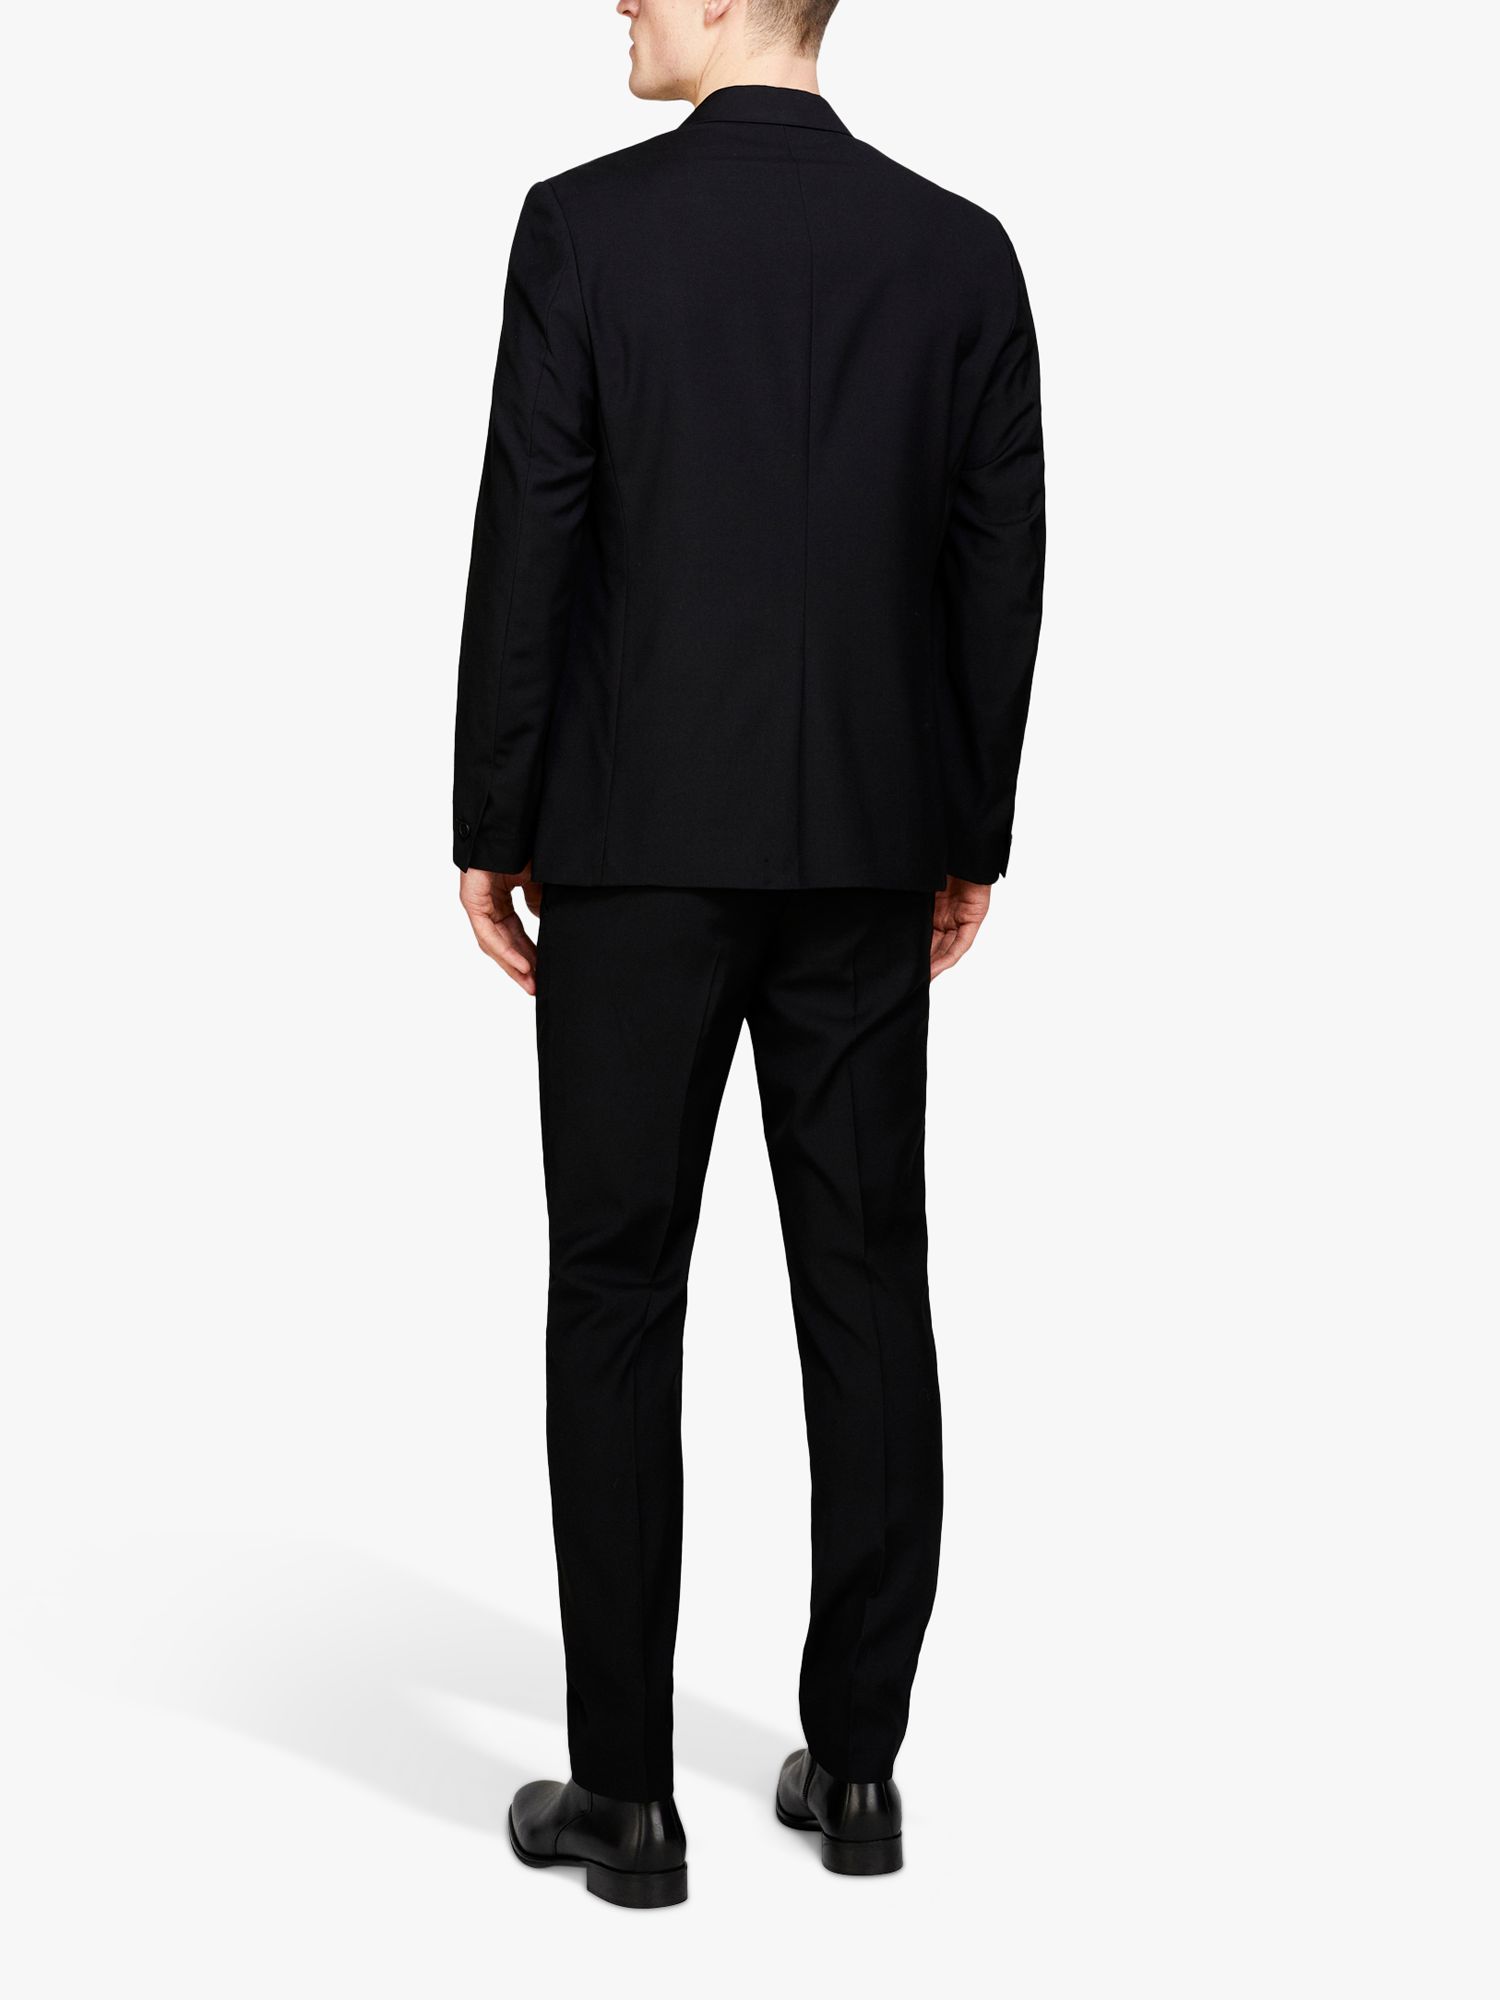 SISLEY Slim Fit Comfort Suit Jacket, Black, 46